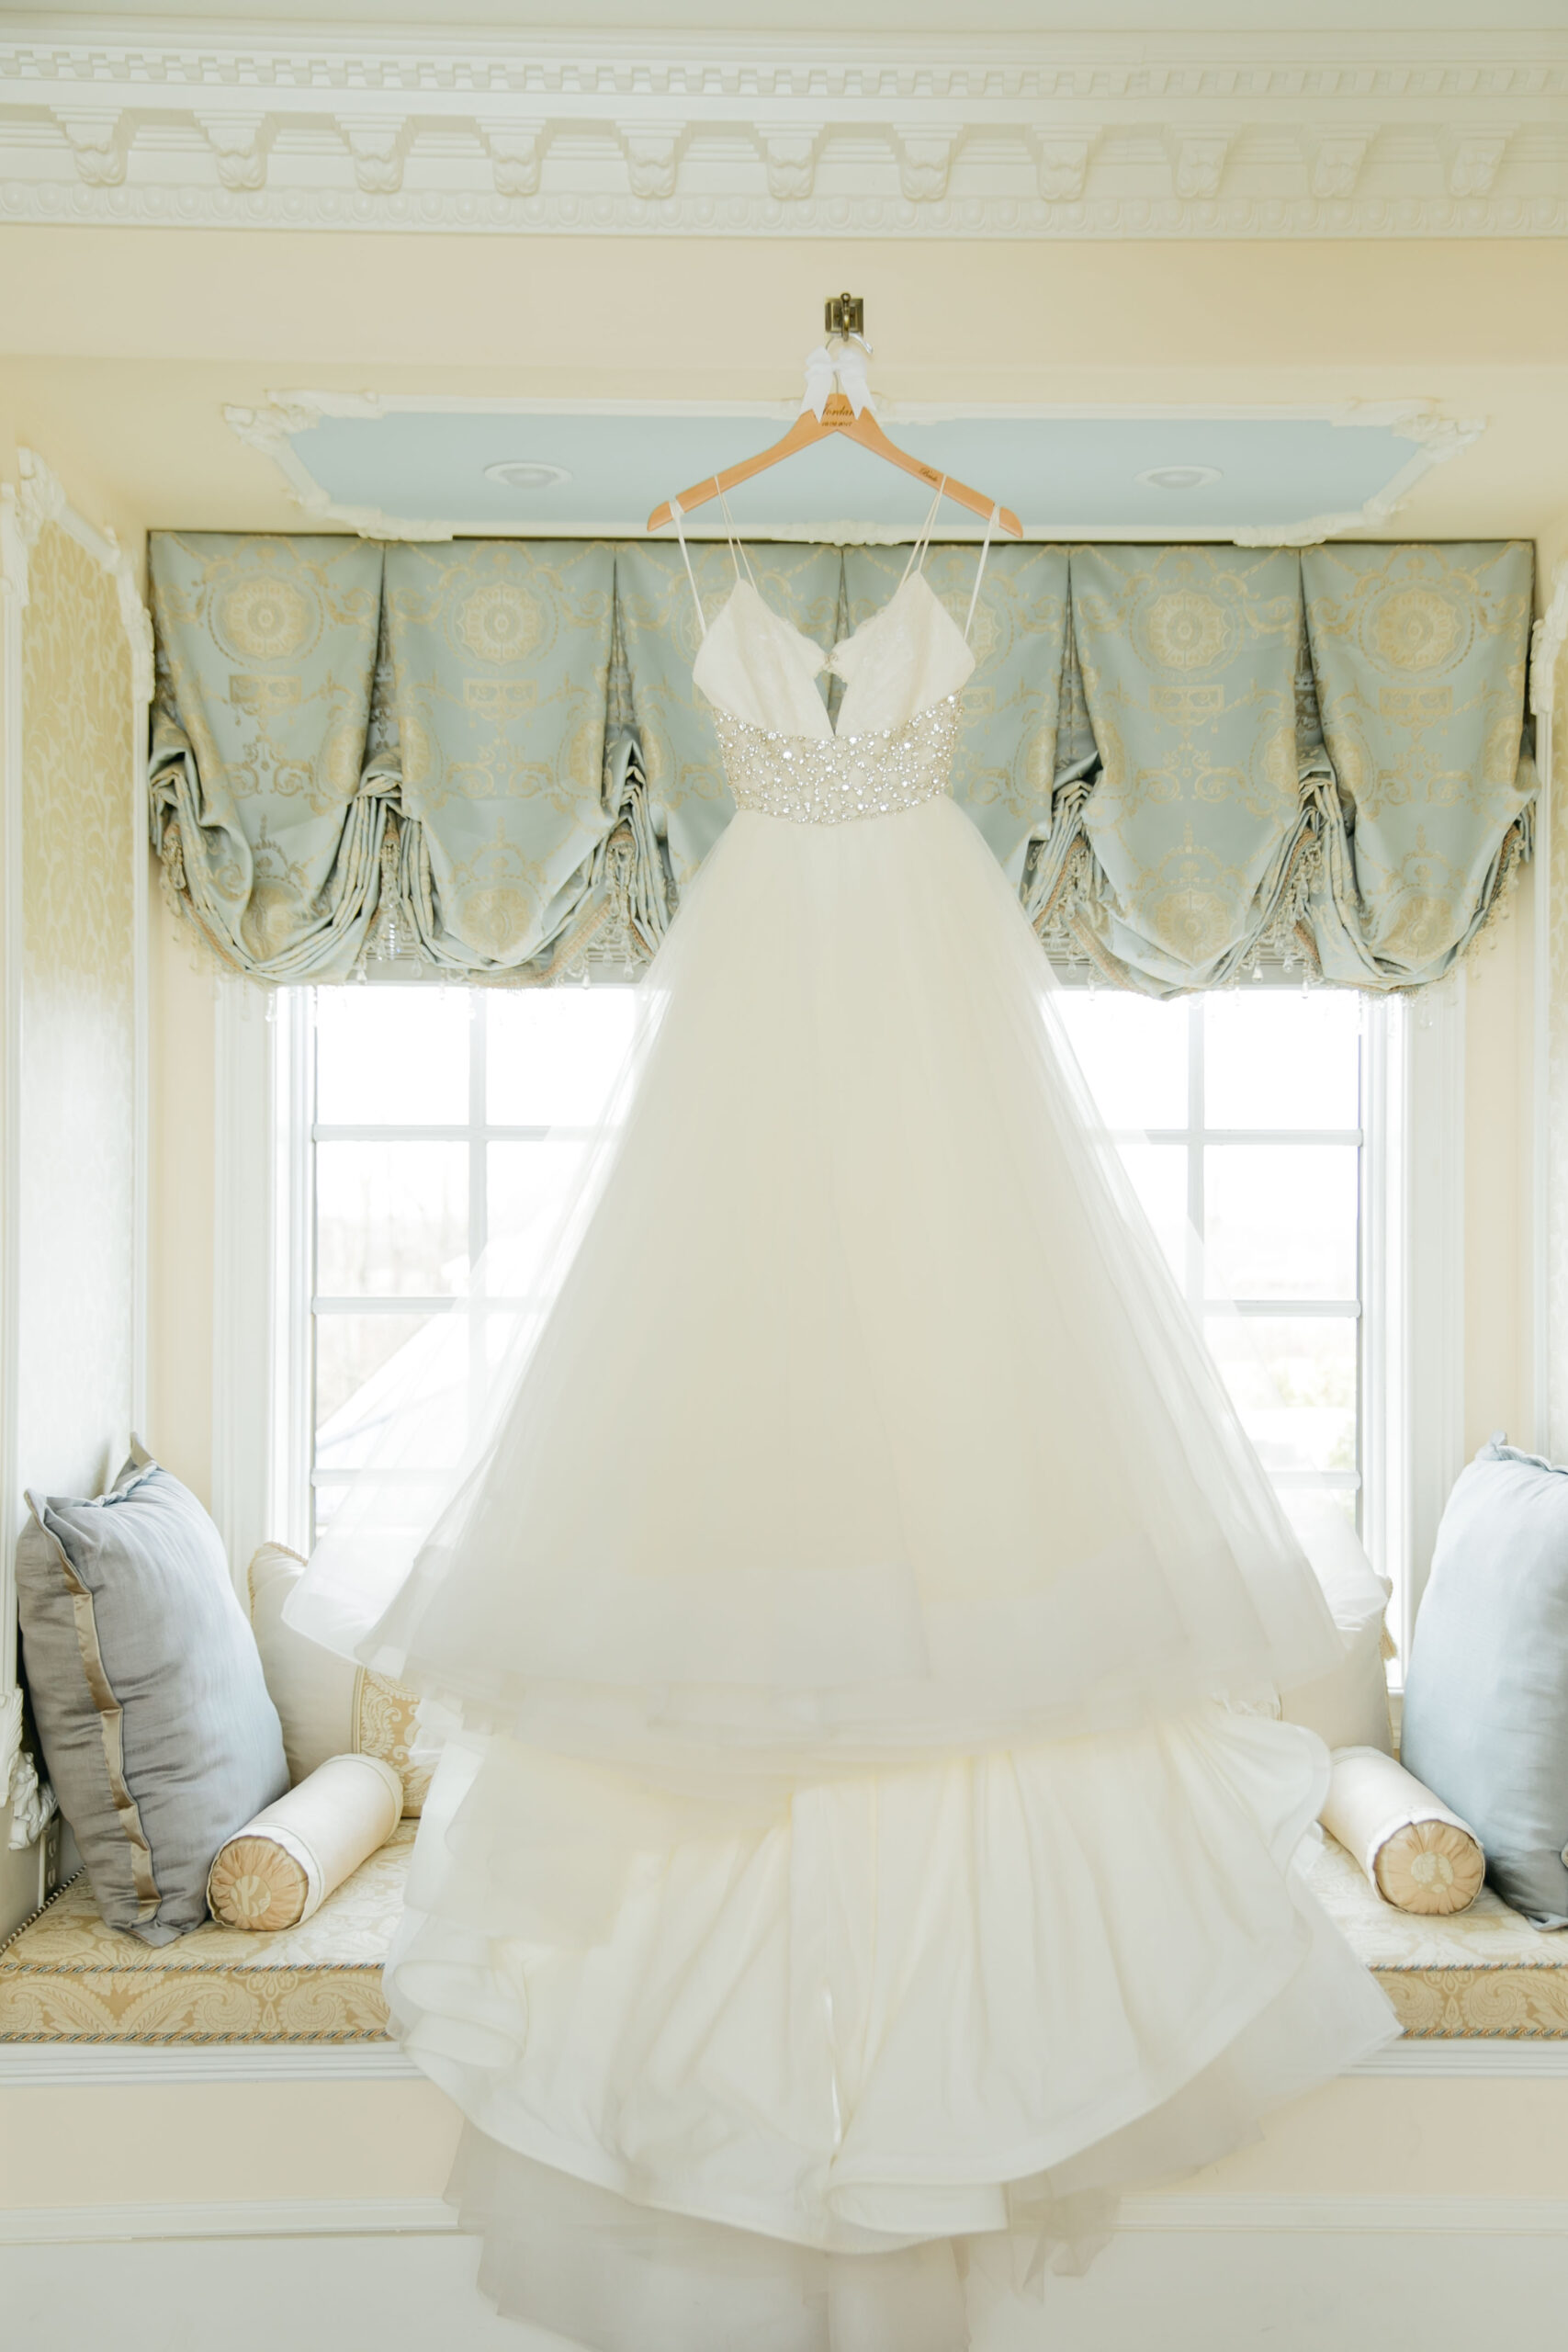 ballgown wedding dress hanging in window